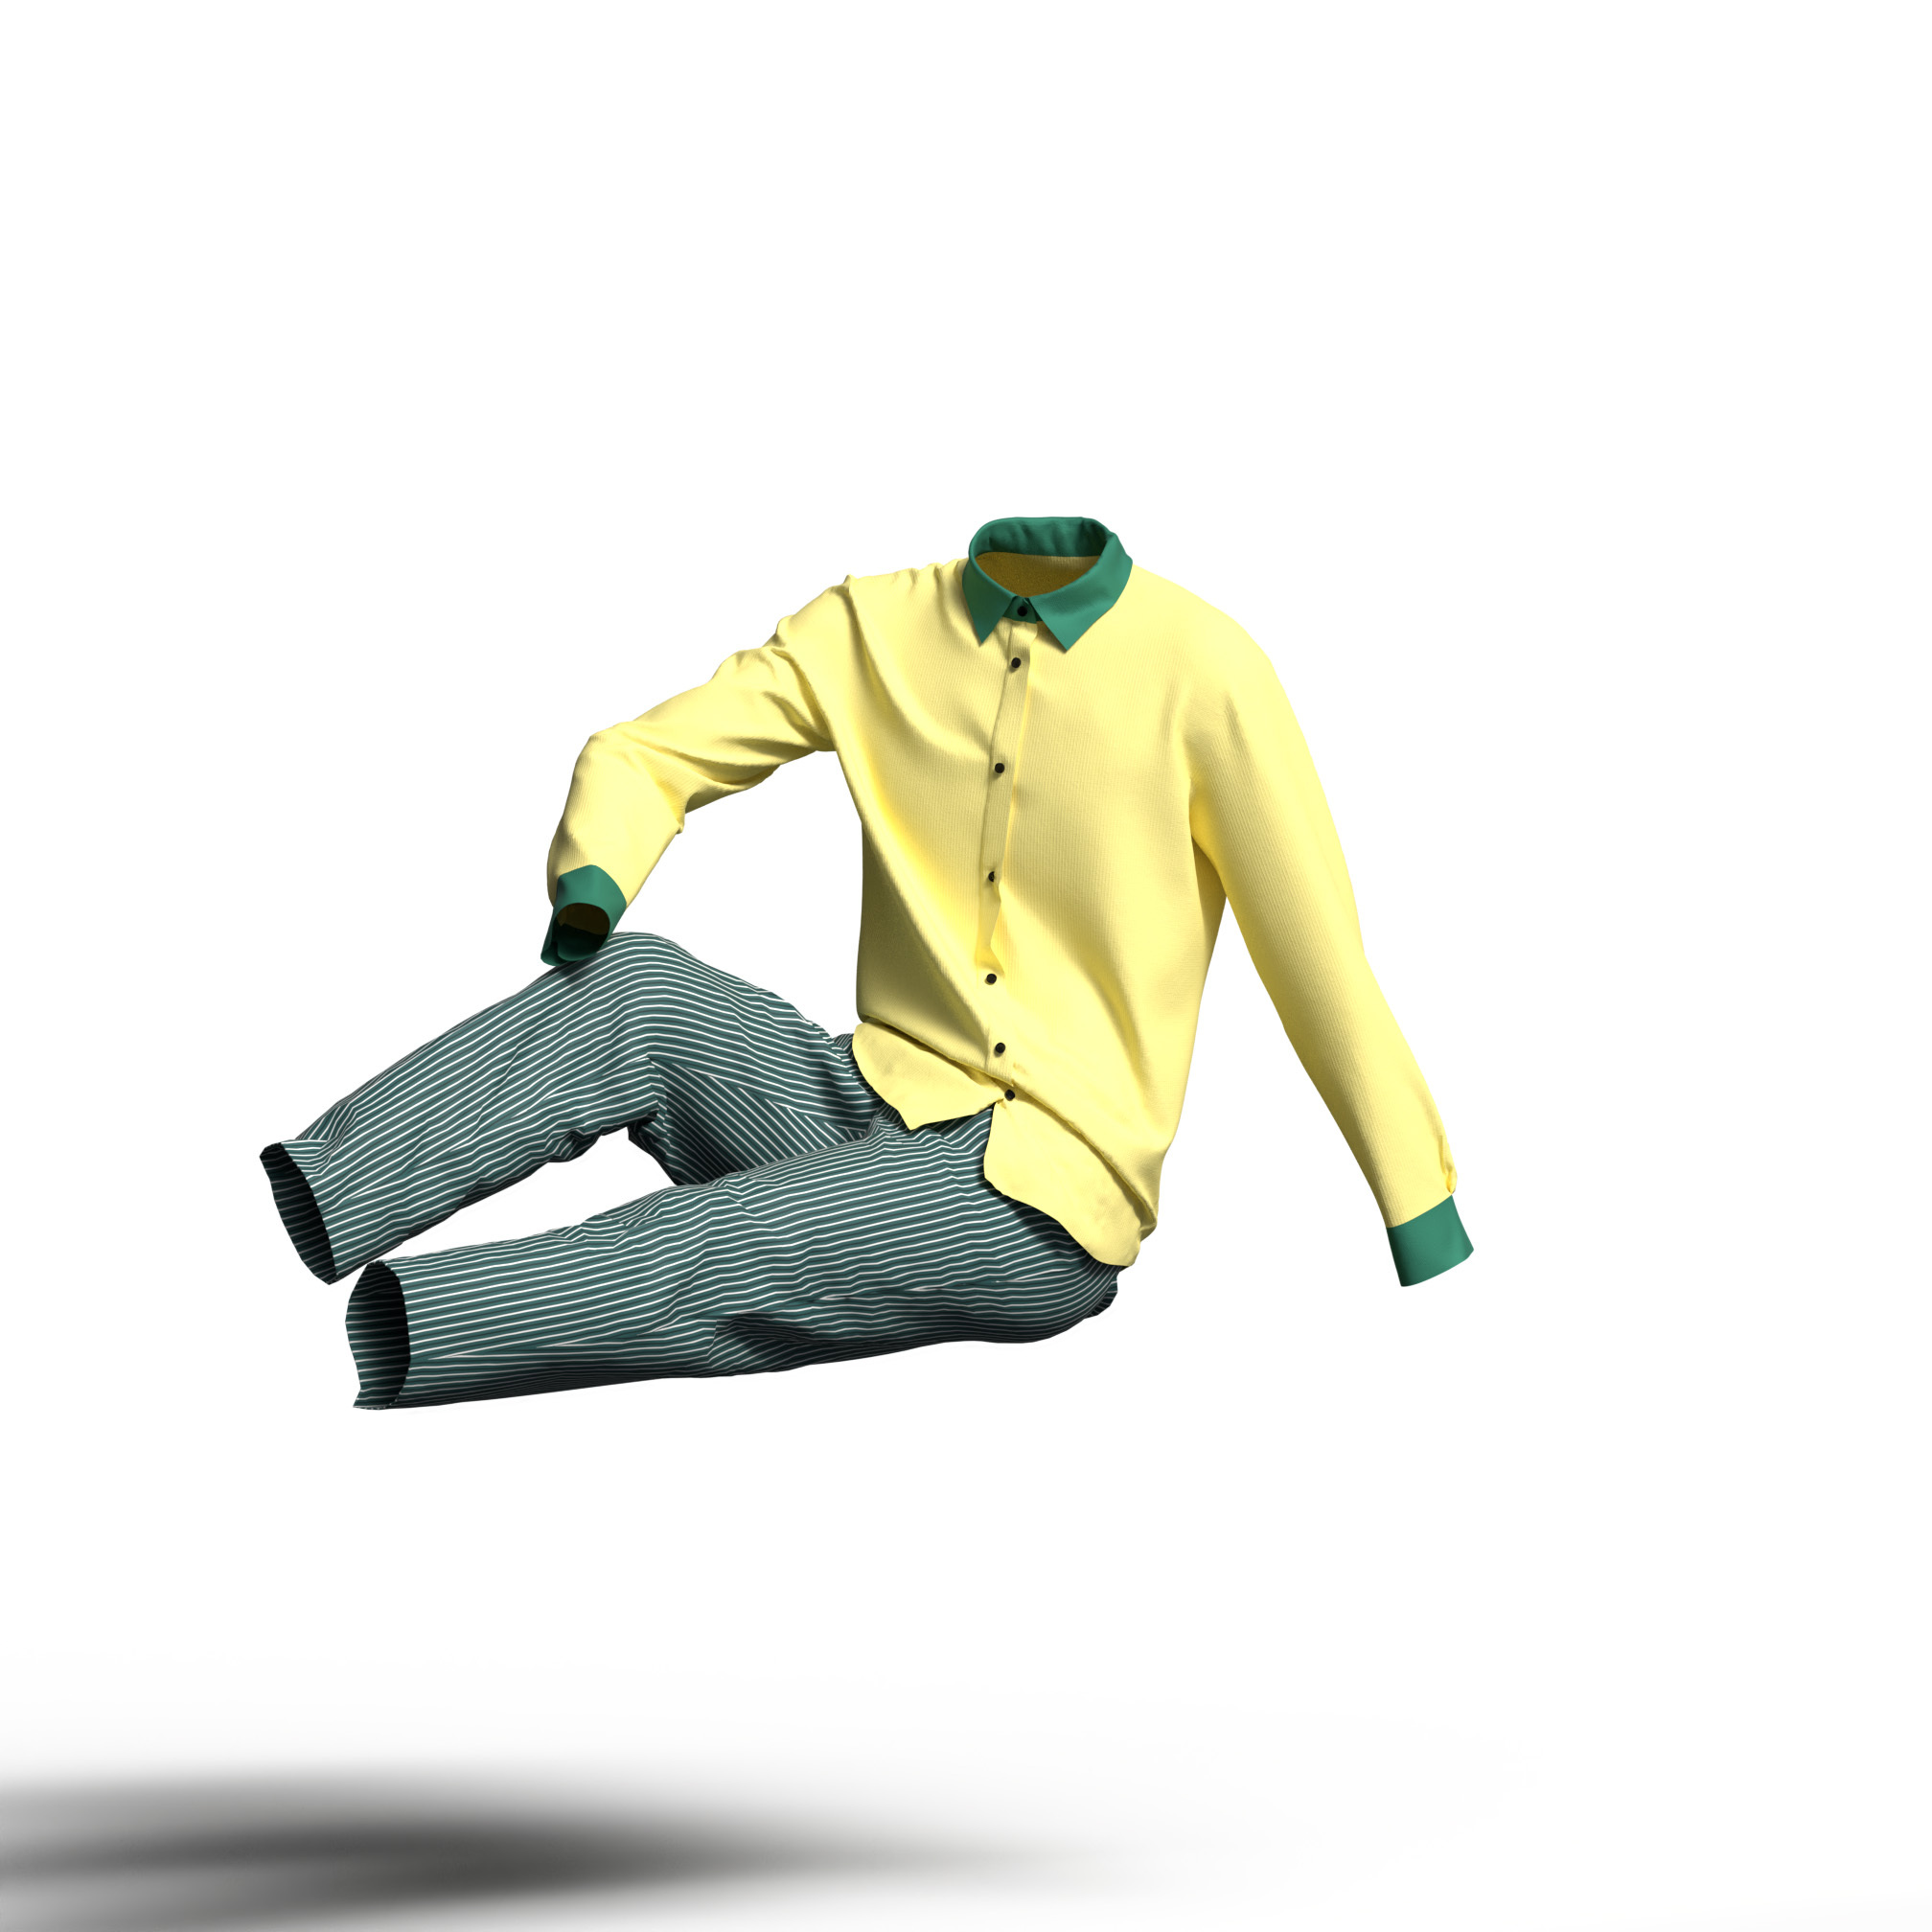 イエロー系のシャツとグリーンパンツのカラーコーディネート。カジュアルなカラーイメージ